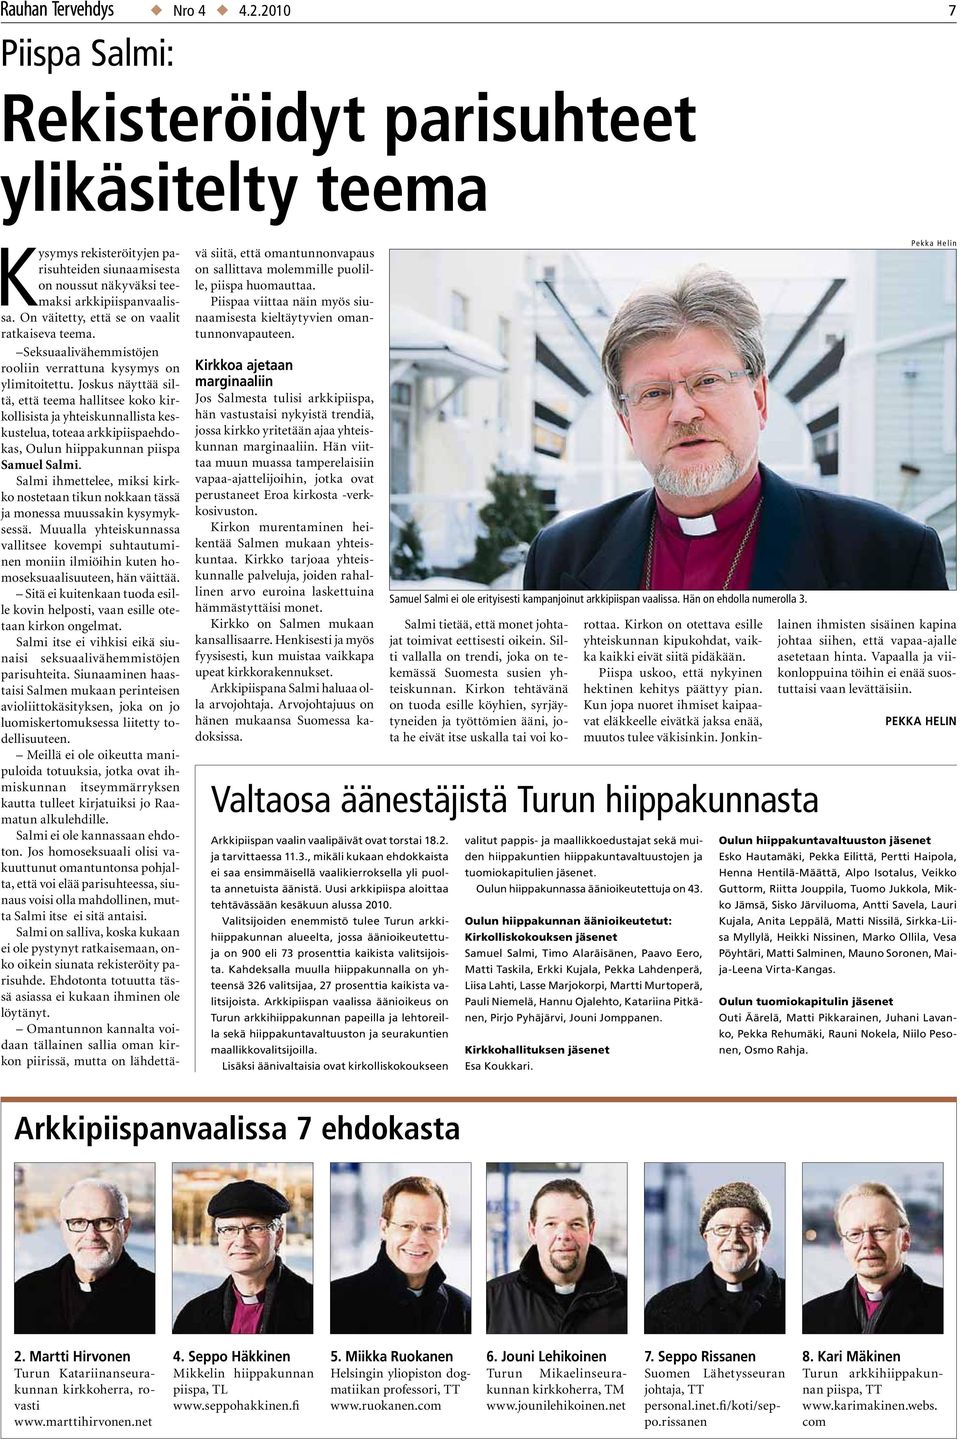 Joskus näyttää siltä, että teema hallitsee koko kirkollisista ja yhteiskunnallista keskustelua, toteaa arkkipiispaehdokas, Oulun hiippakunnan piispa Samuel Salmi.